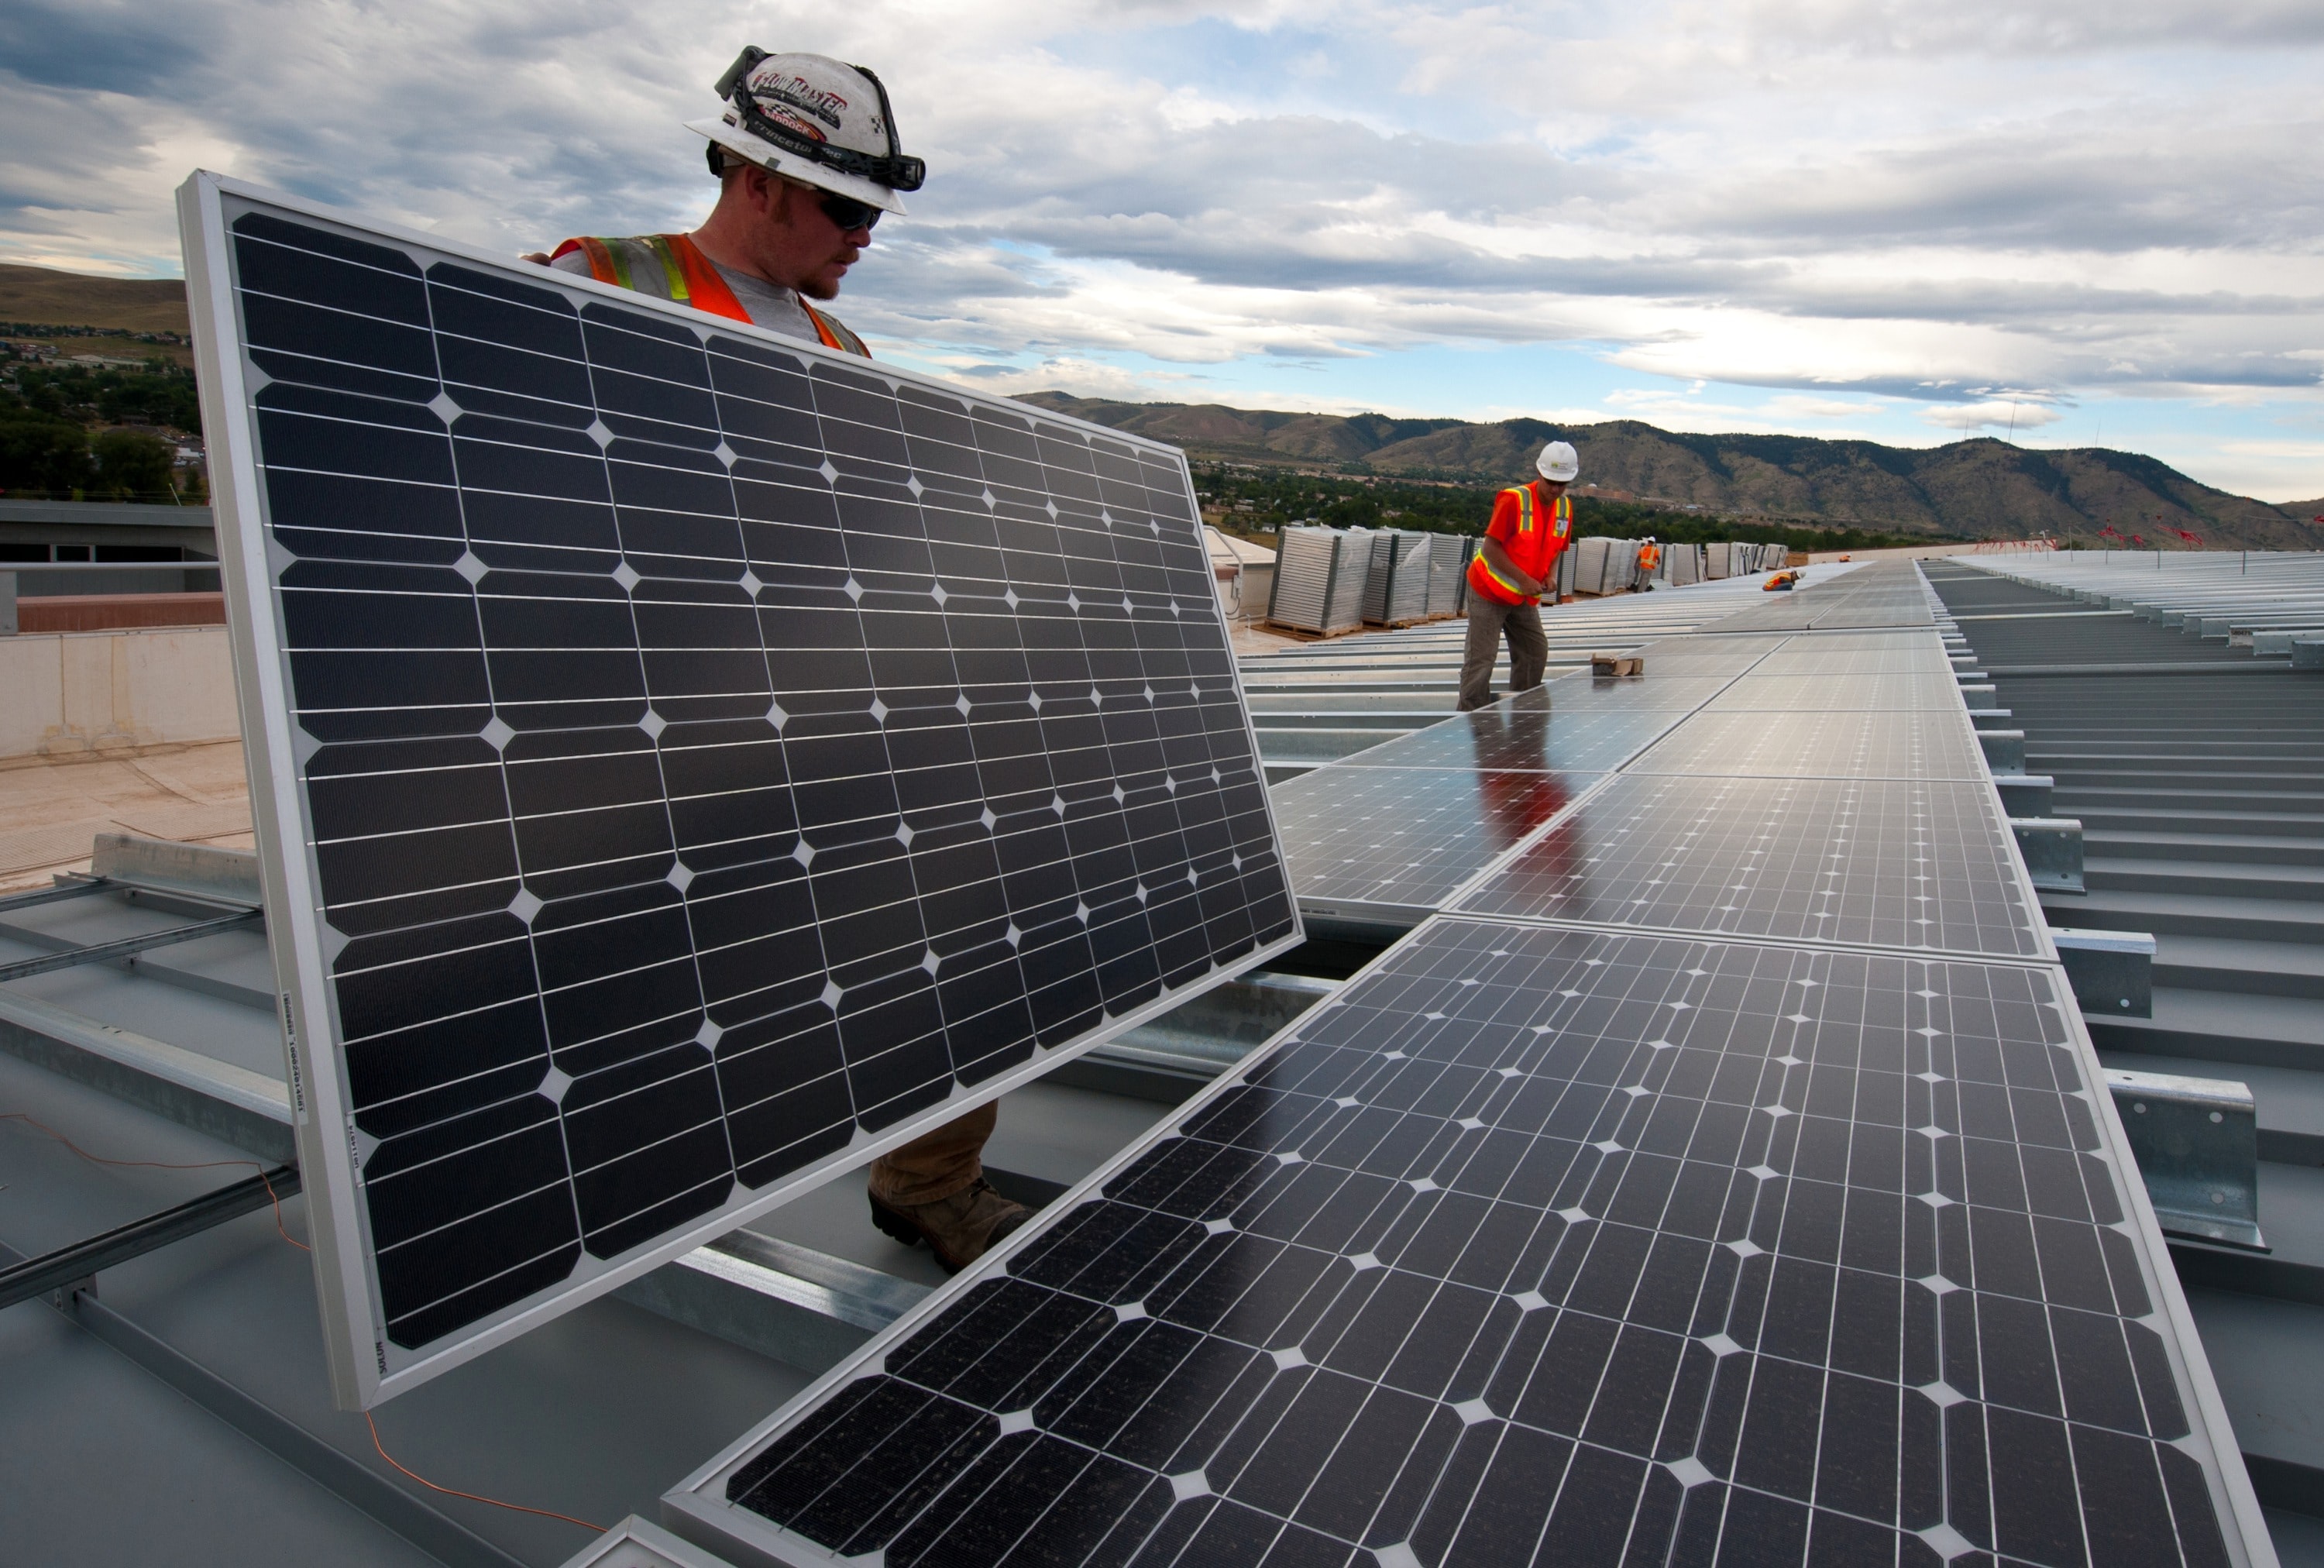 美国能源部(Energy Department)正在利用太阳能爱迪生公司(Sun Edison)和Xcel能源公司(Xcel Energy)签署的电力购买协议(Power Purchase Agreement)，员工们在这些电池板上工作。